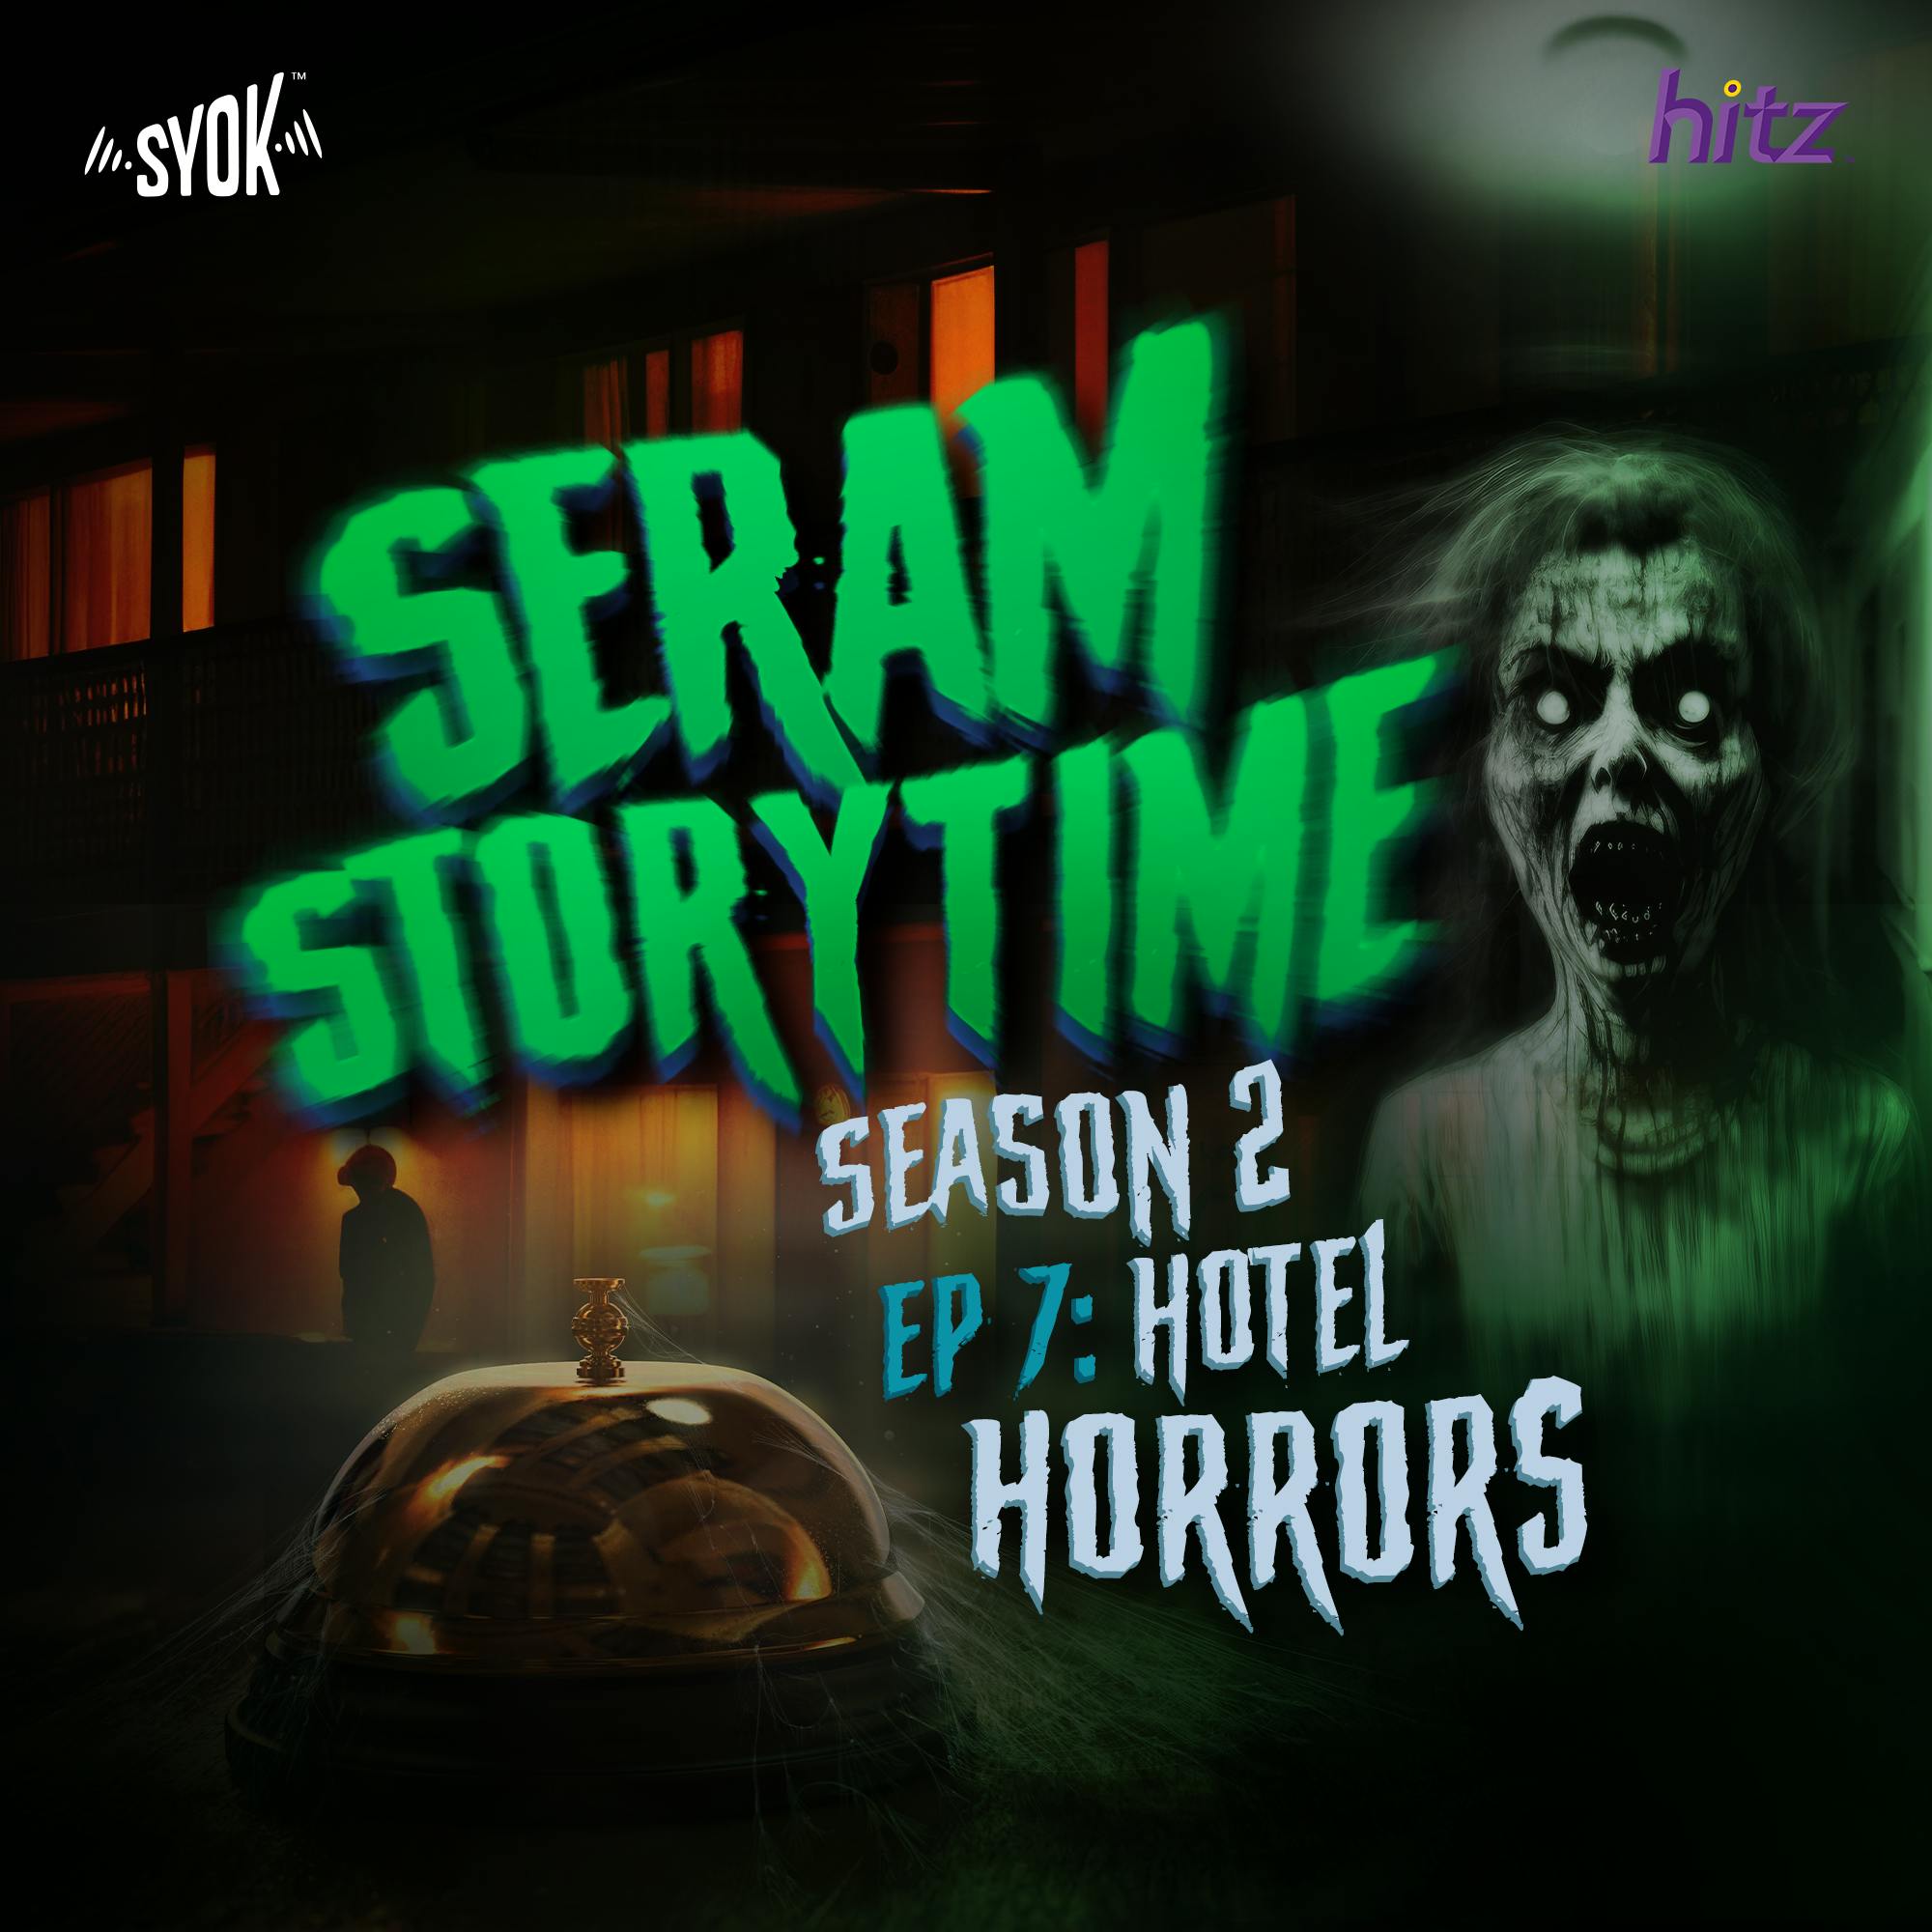 Hotel Horrors | Seram Storytime S2E7